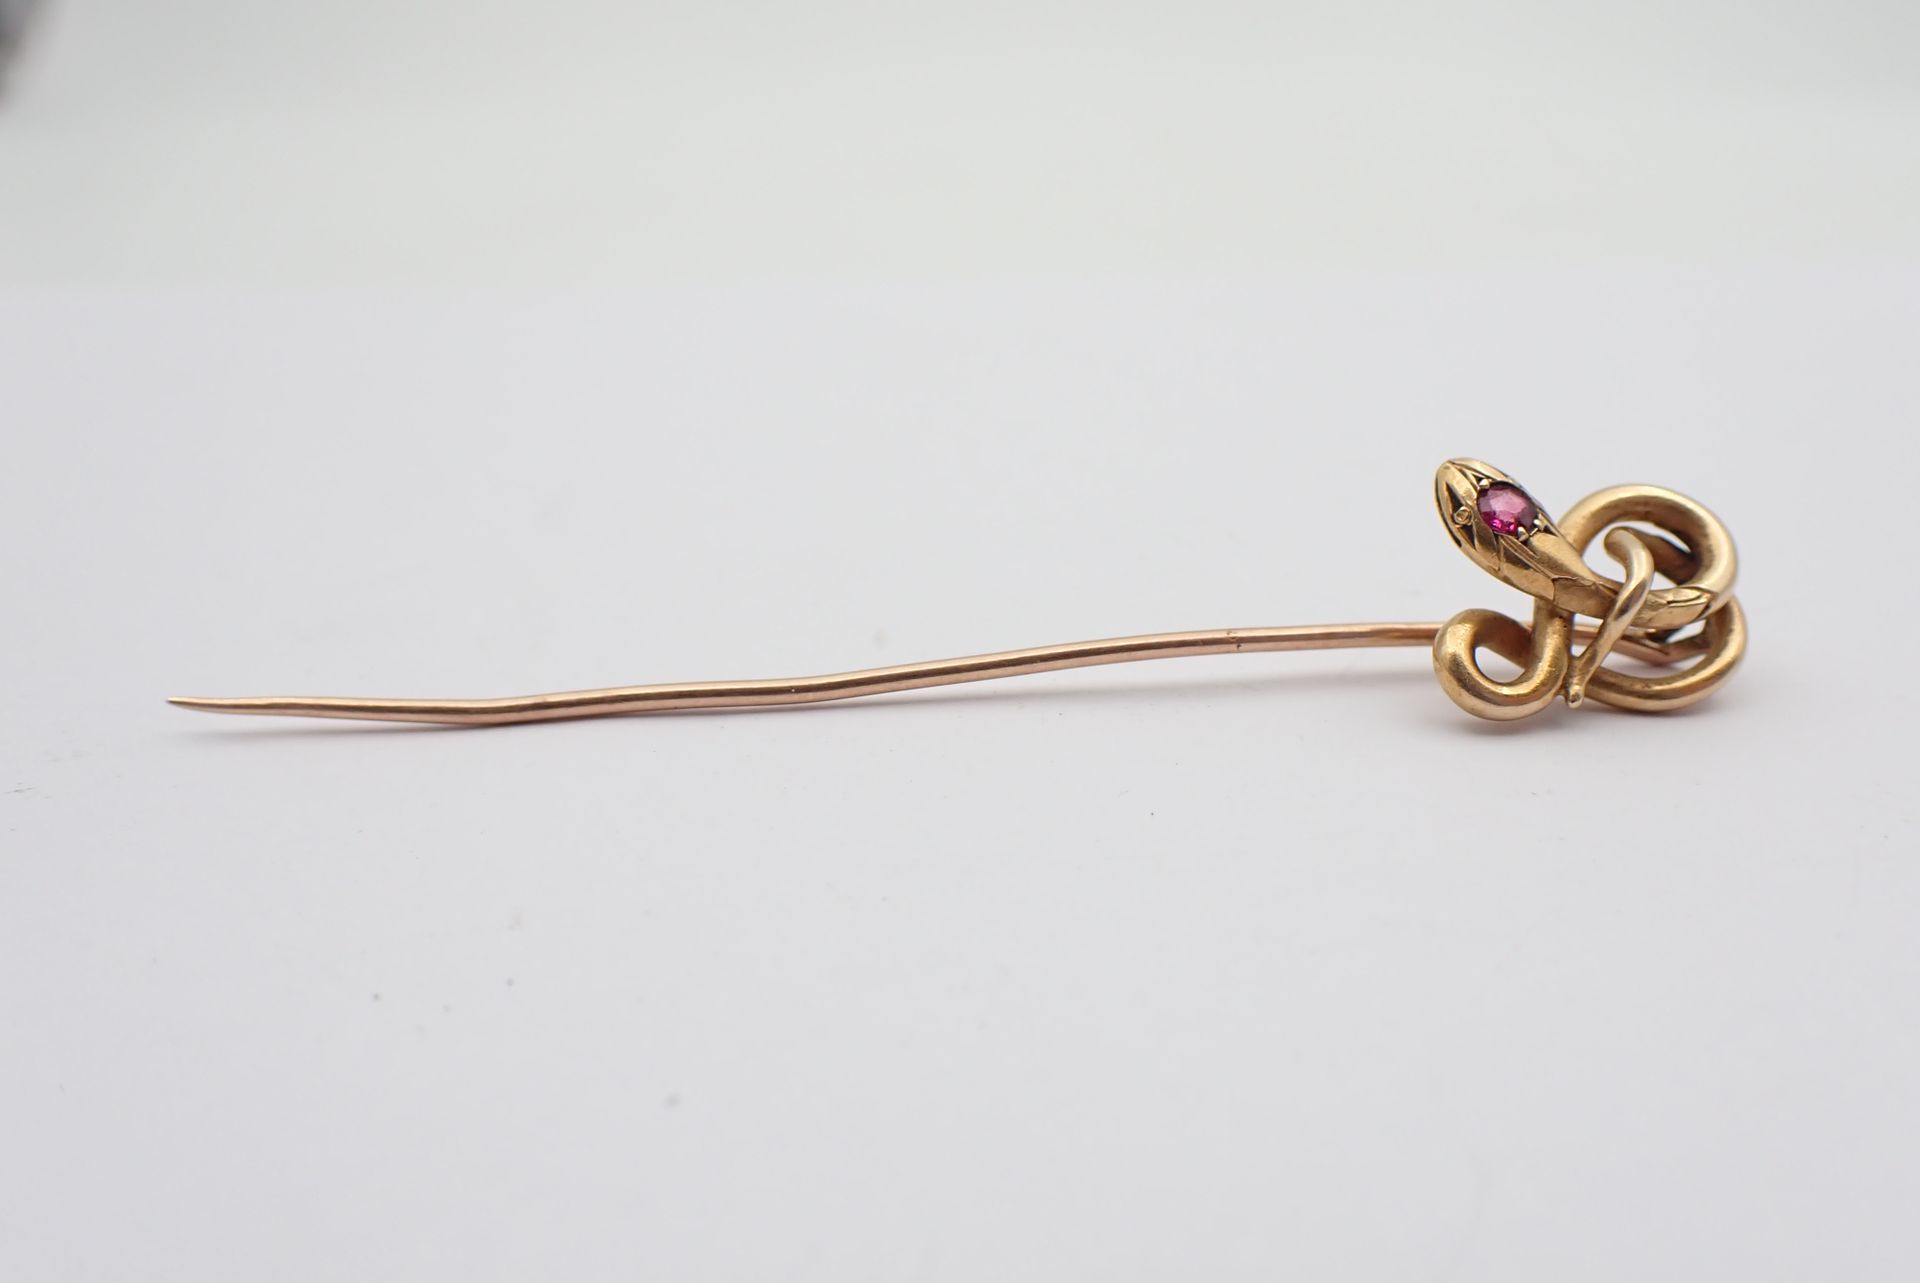 Null Alfiler de corbata de oro decorado con serpiente y rubí, peso 3,6 g